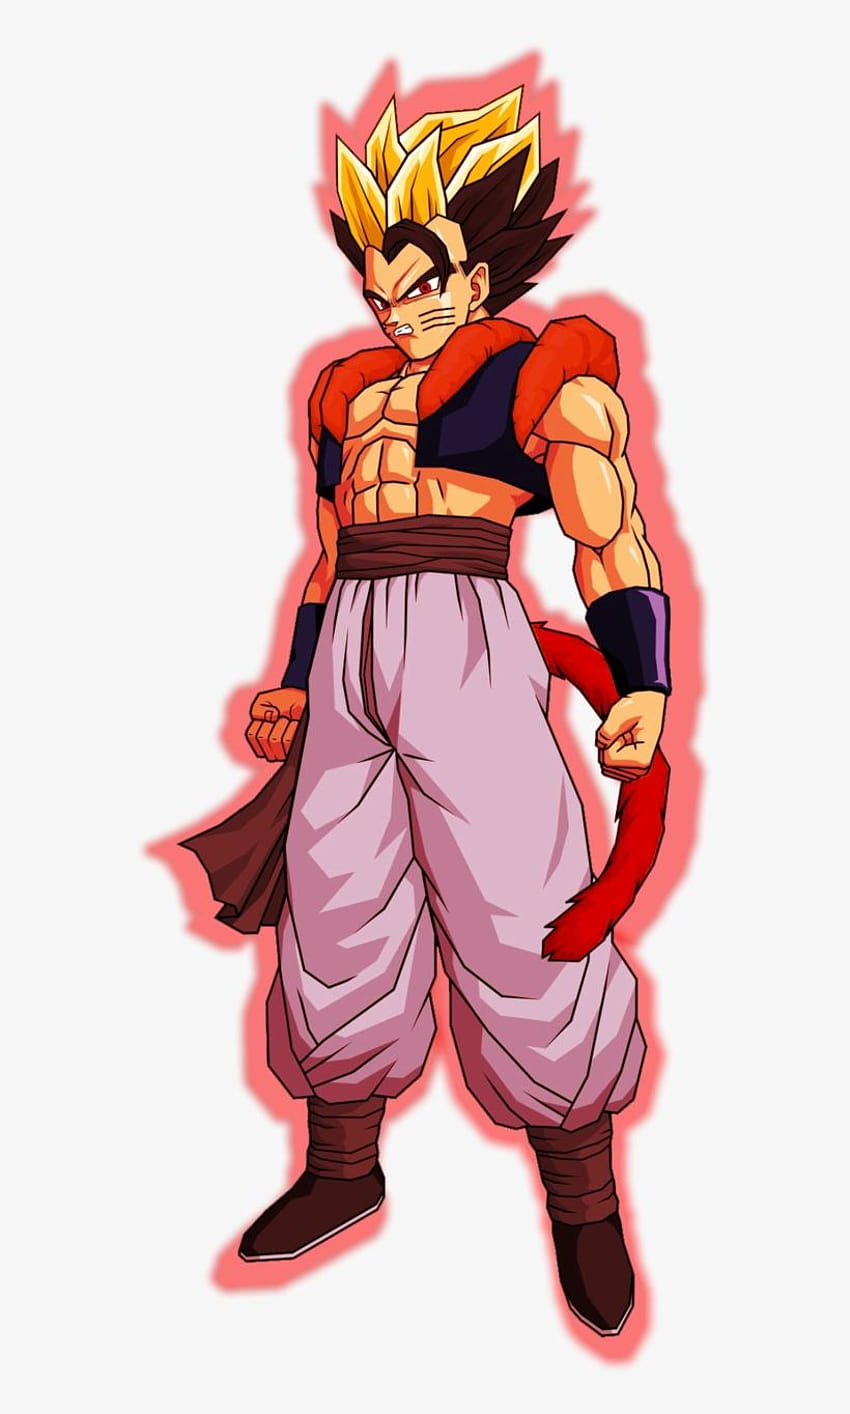 Super Saiyan God, Dragon Ball Wiki